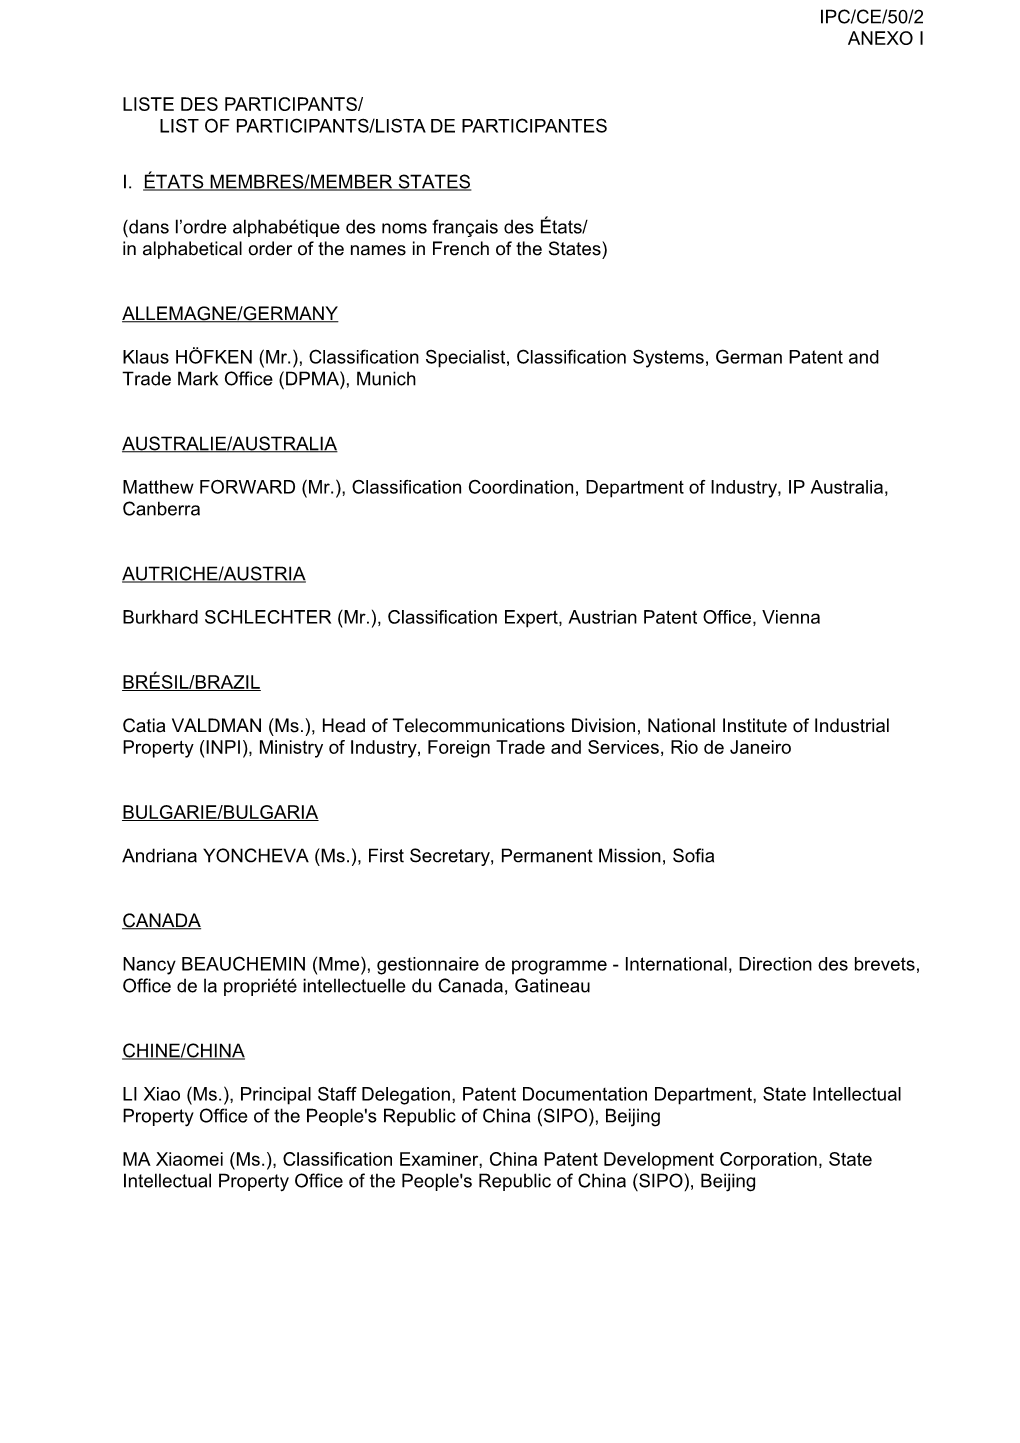 IPC/CE/50/2 (Anexo I), Lista De Participantes, Informe De La 50A Sesión Del Comité De Expertos